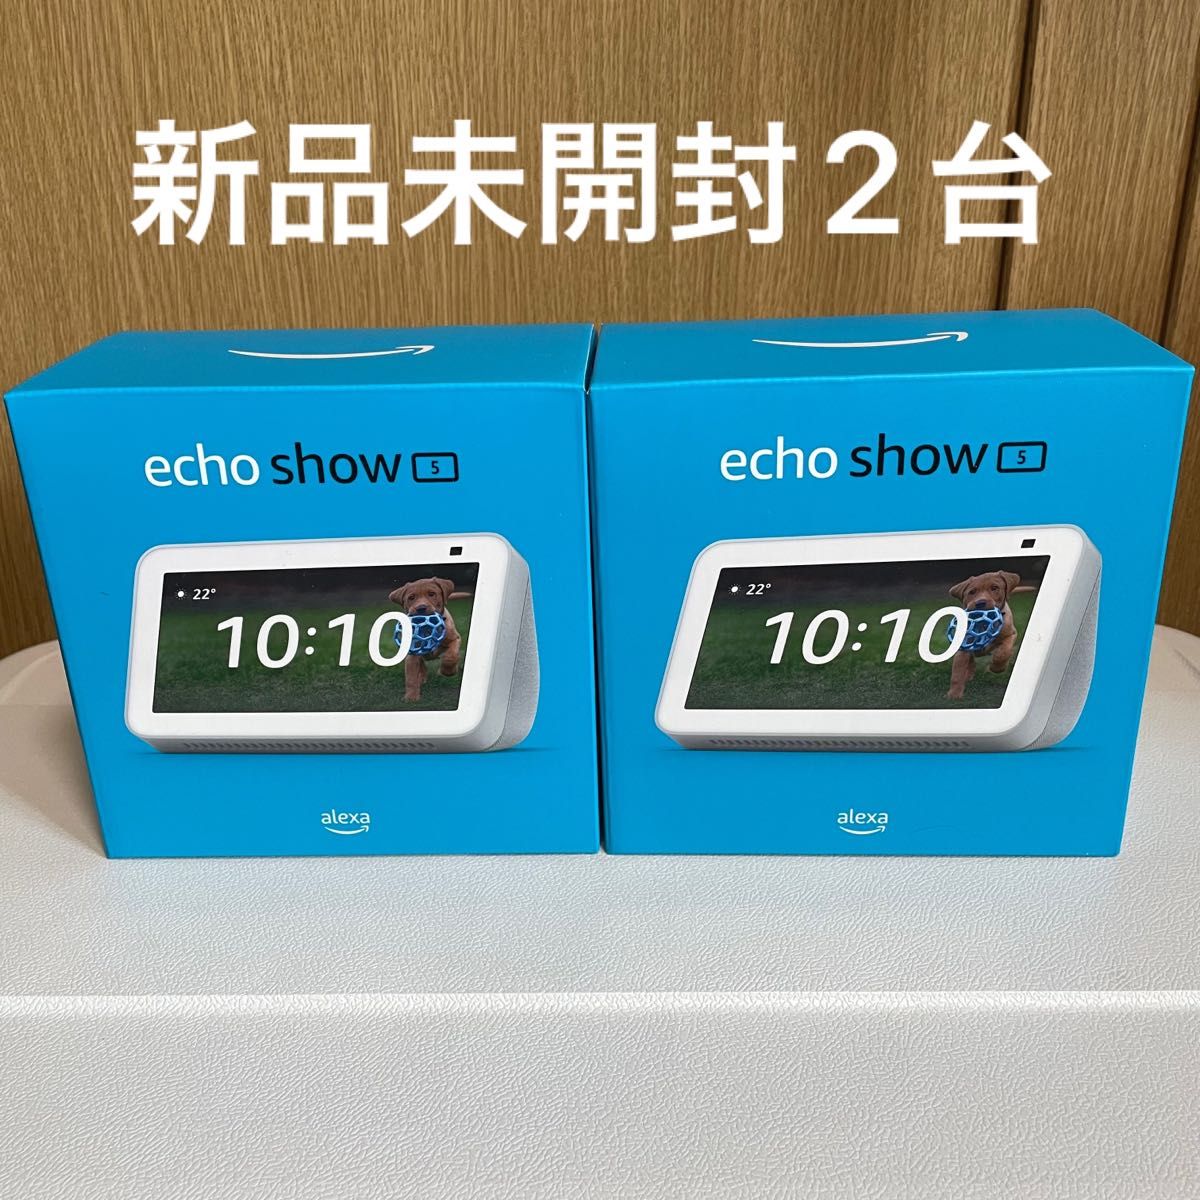 echo show 5 新品未開封2台セット グレーシャーホワイト